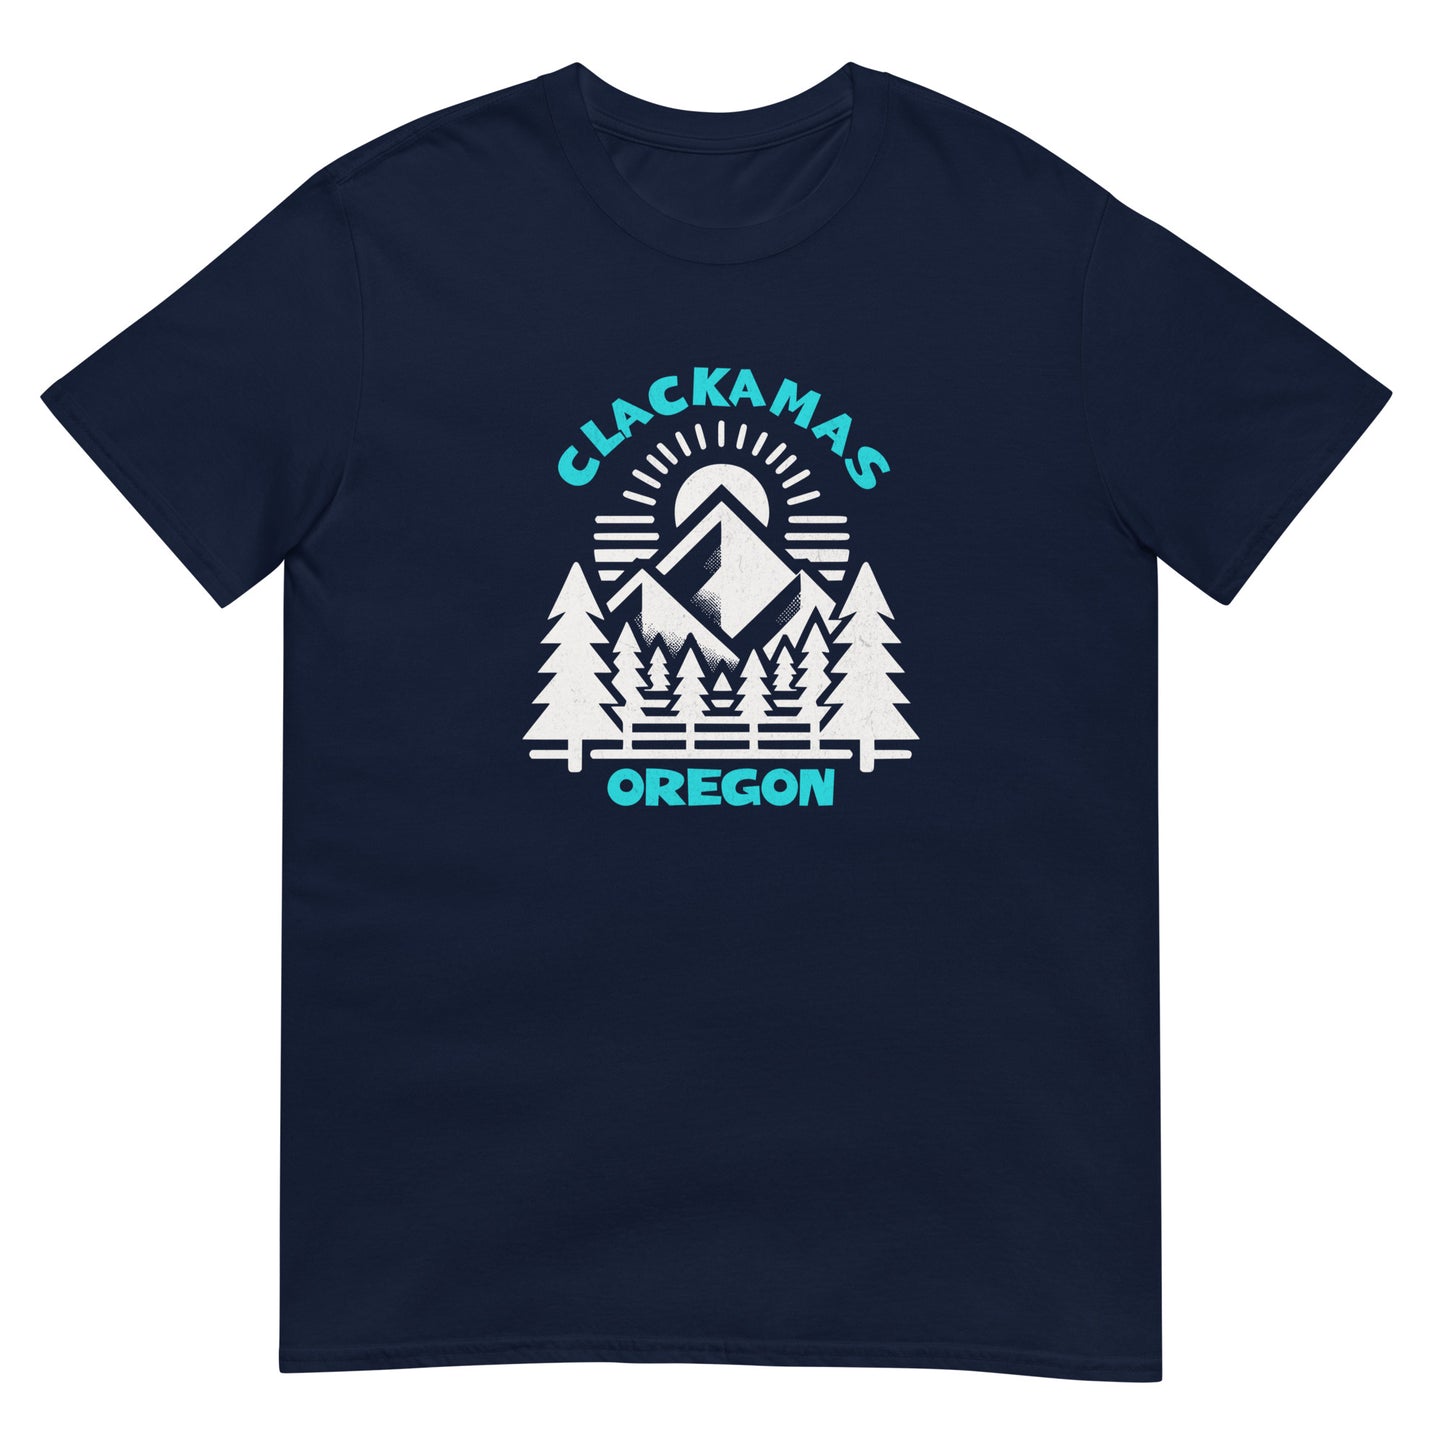 Clackamas - featured cities - Short-Sleeve Unisex T-Shirt